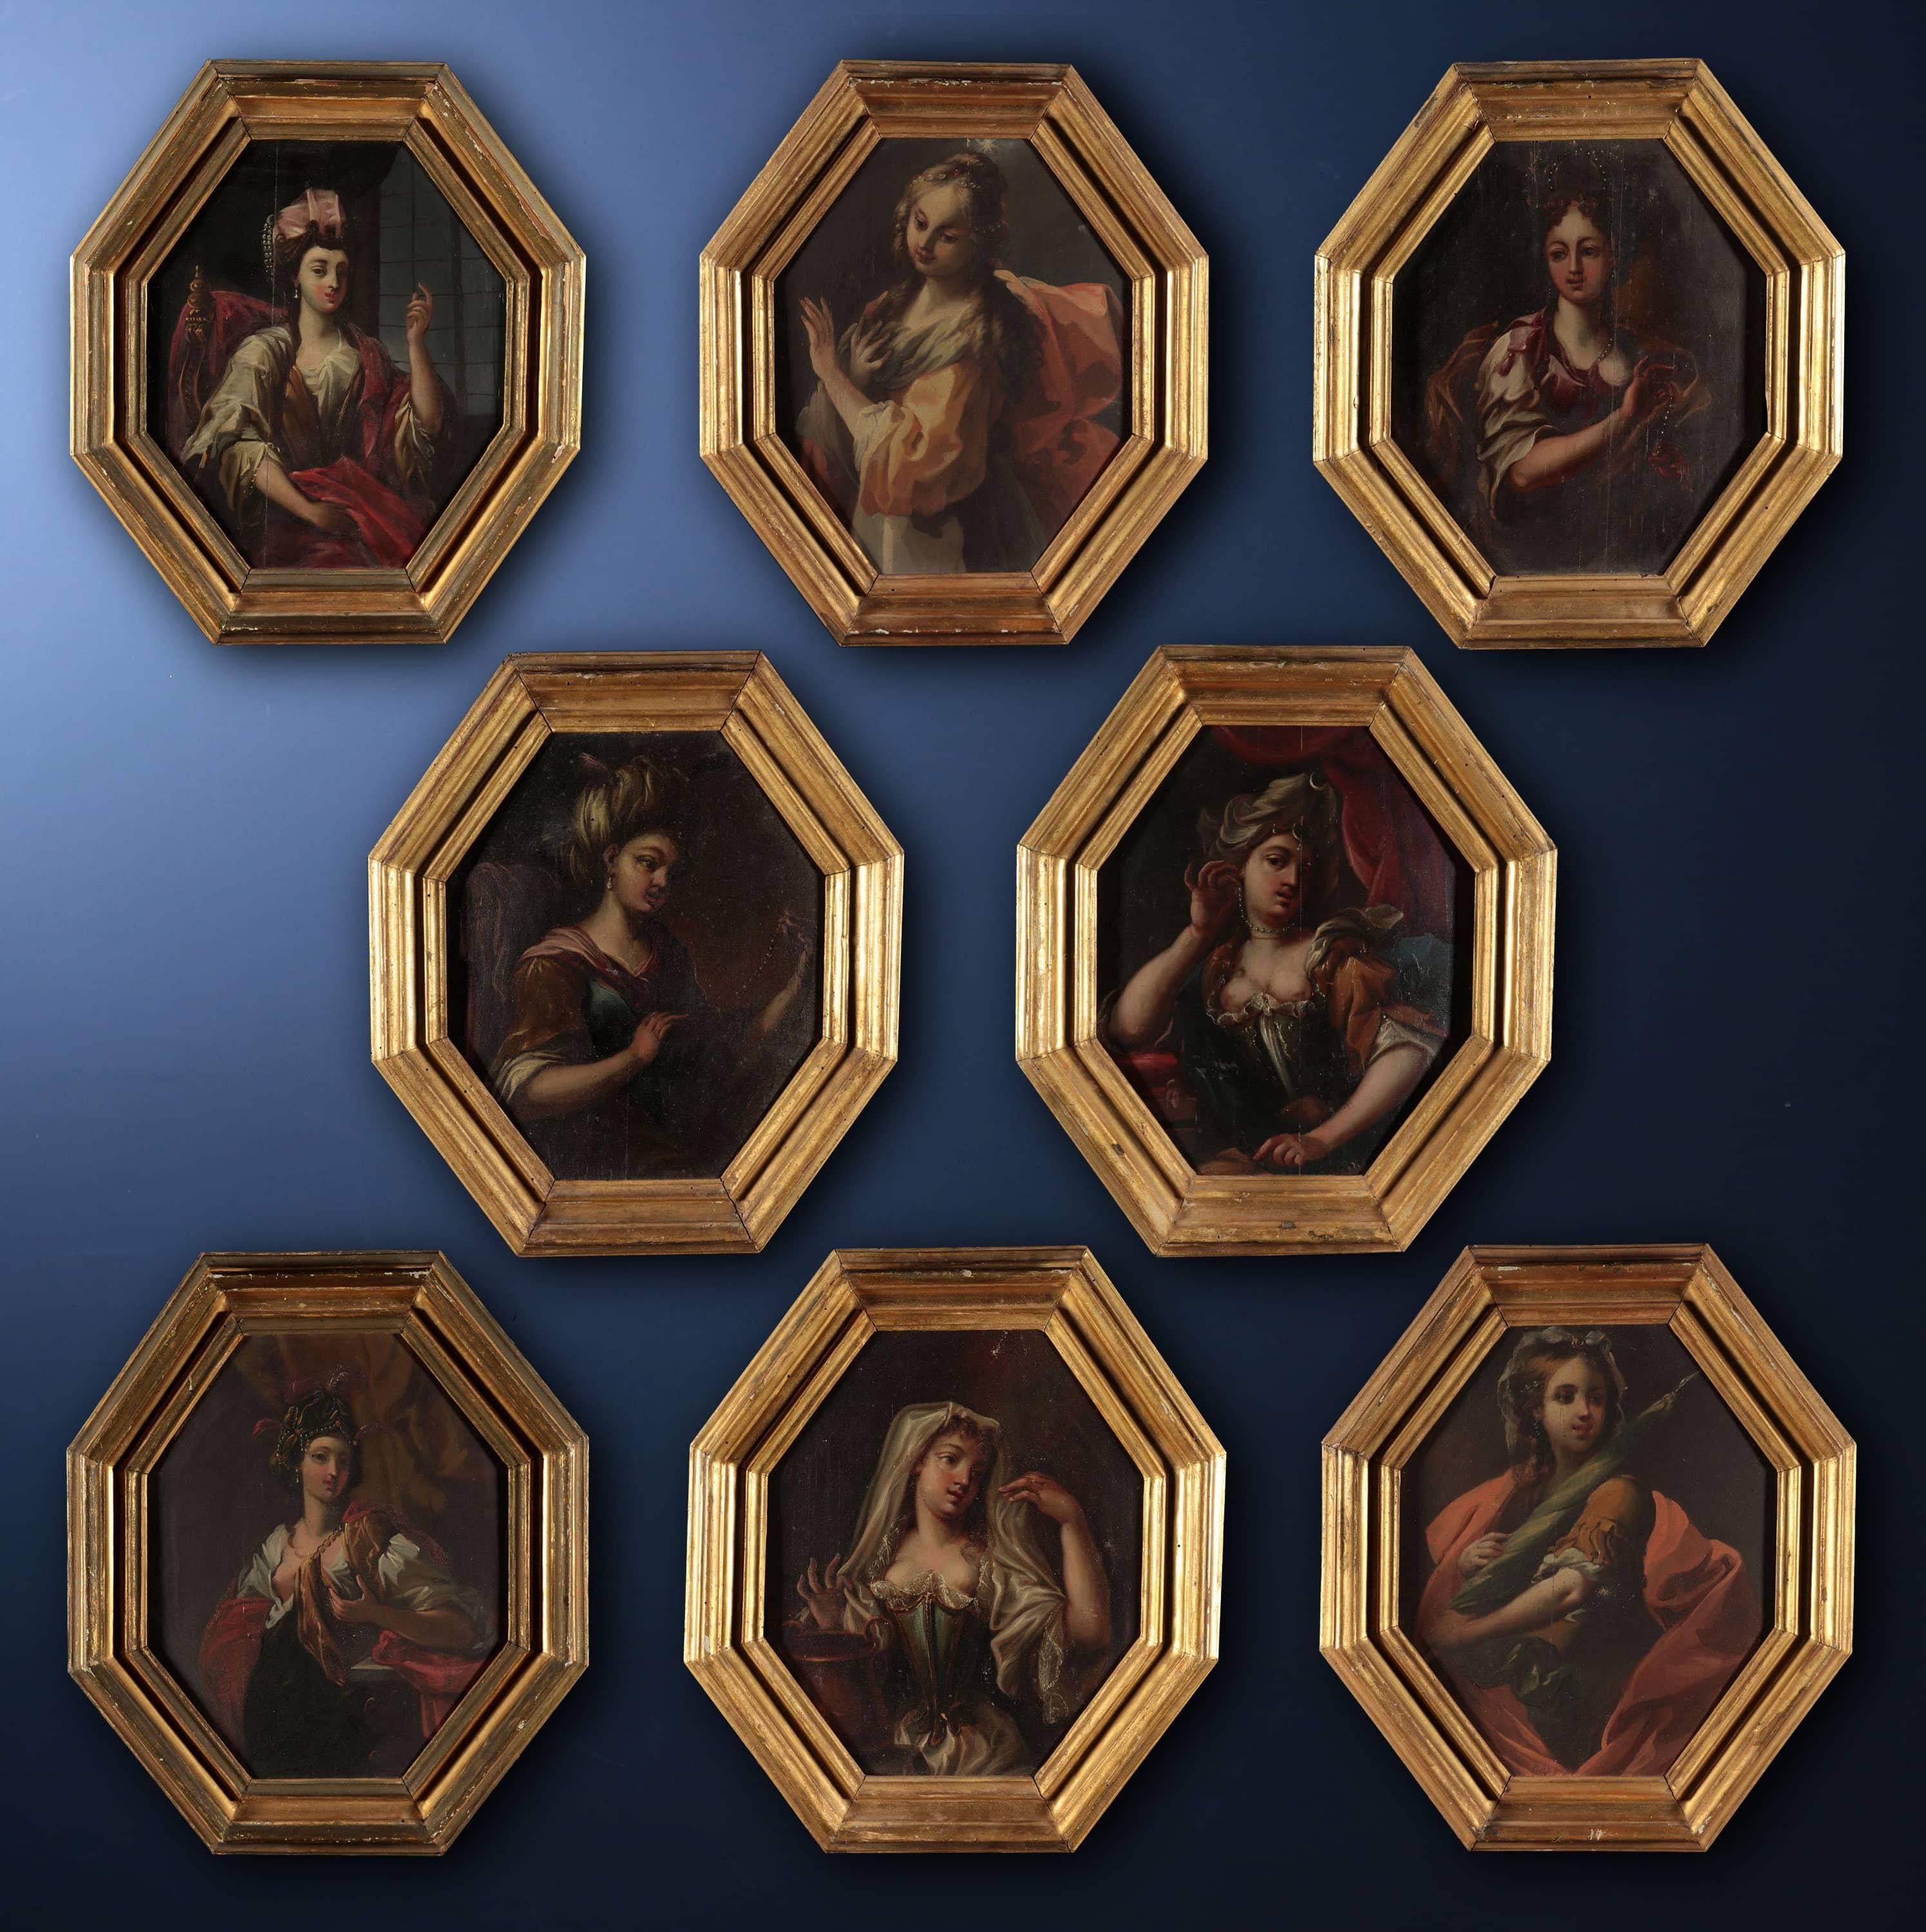 Oil on gattice wood in octagon. Il gruppo di otto dipinti in oggetto (figg. 1-8) rappresenta, nel classico formato fiorentino dell’ottagono, una serie di effigi femminili a mezza figura. 

Più precisamente, si tratta di giovani fanciulle